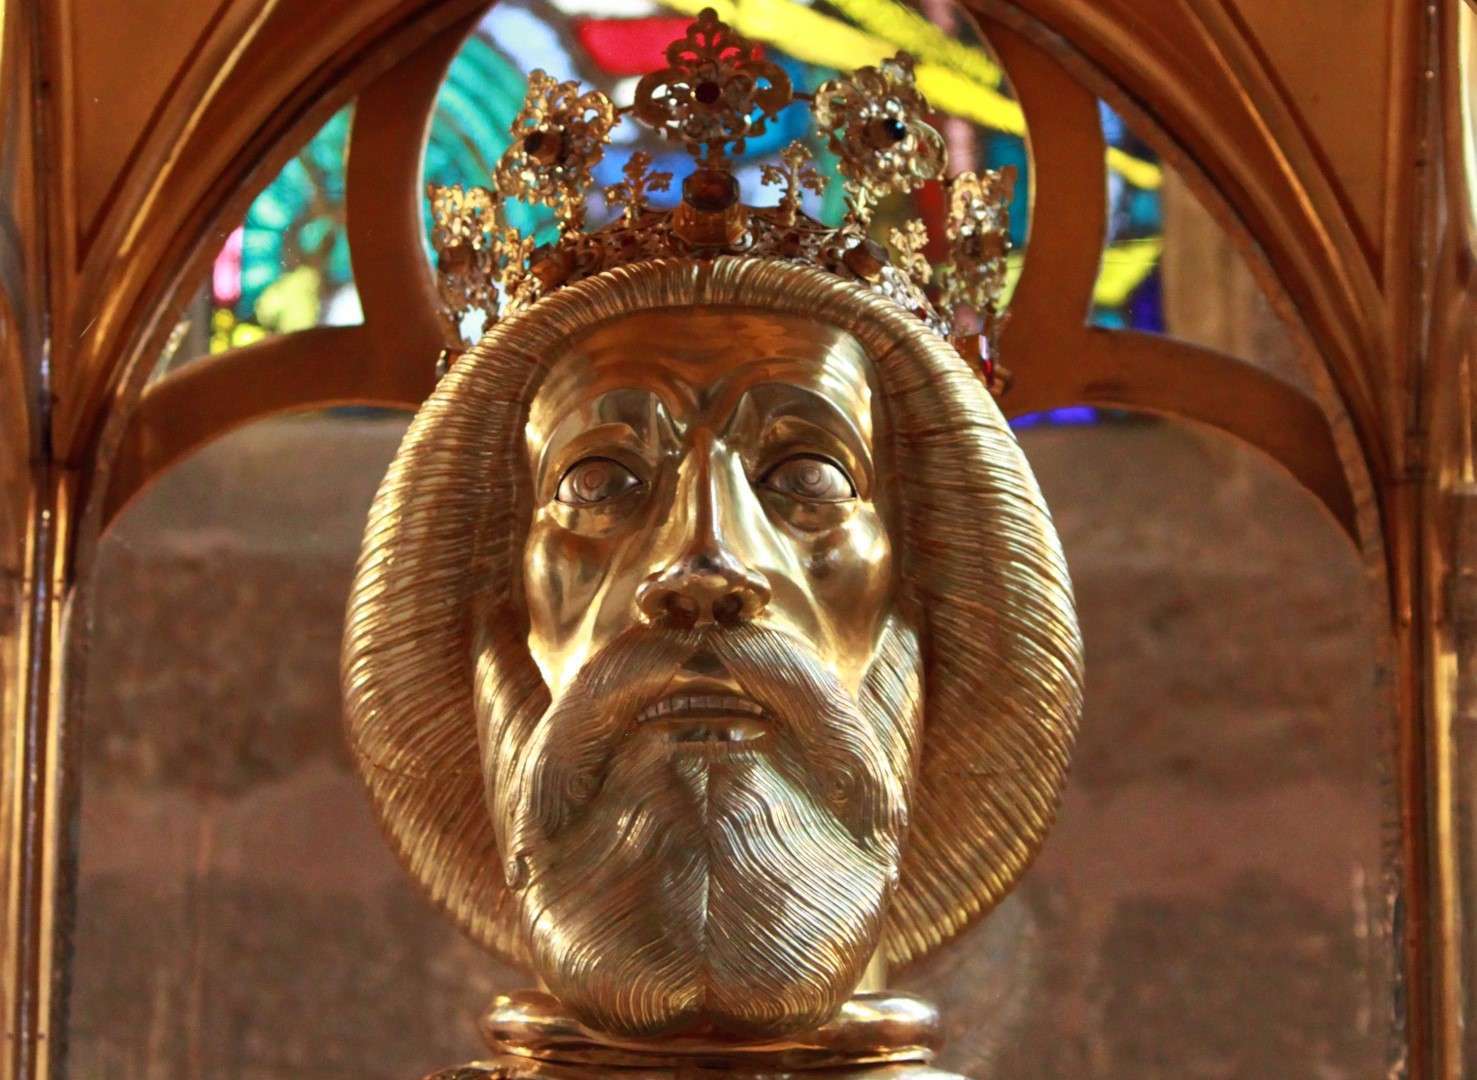 <a href='http://hellogyor.hu/en/sights/the-herm-of-saint-ladislaus/'>The herm of Saint Ladislaus</a>